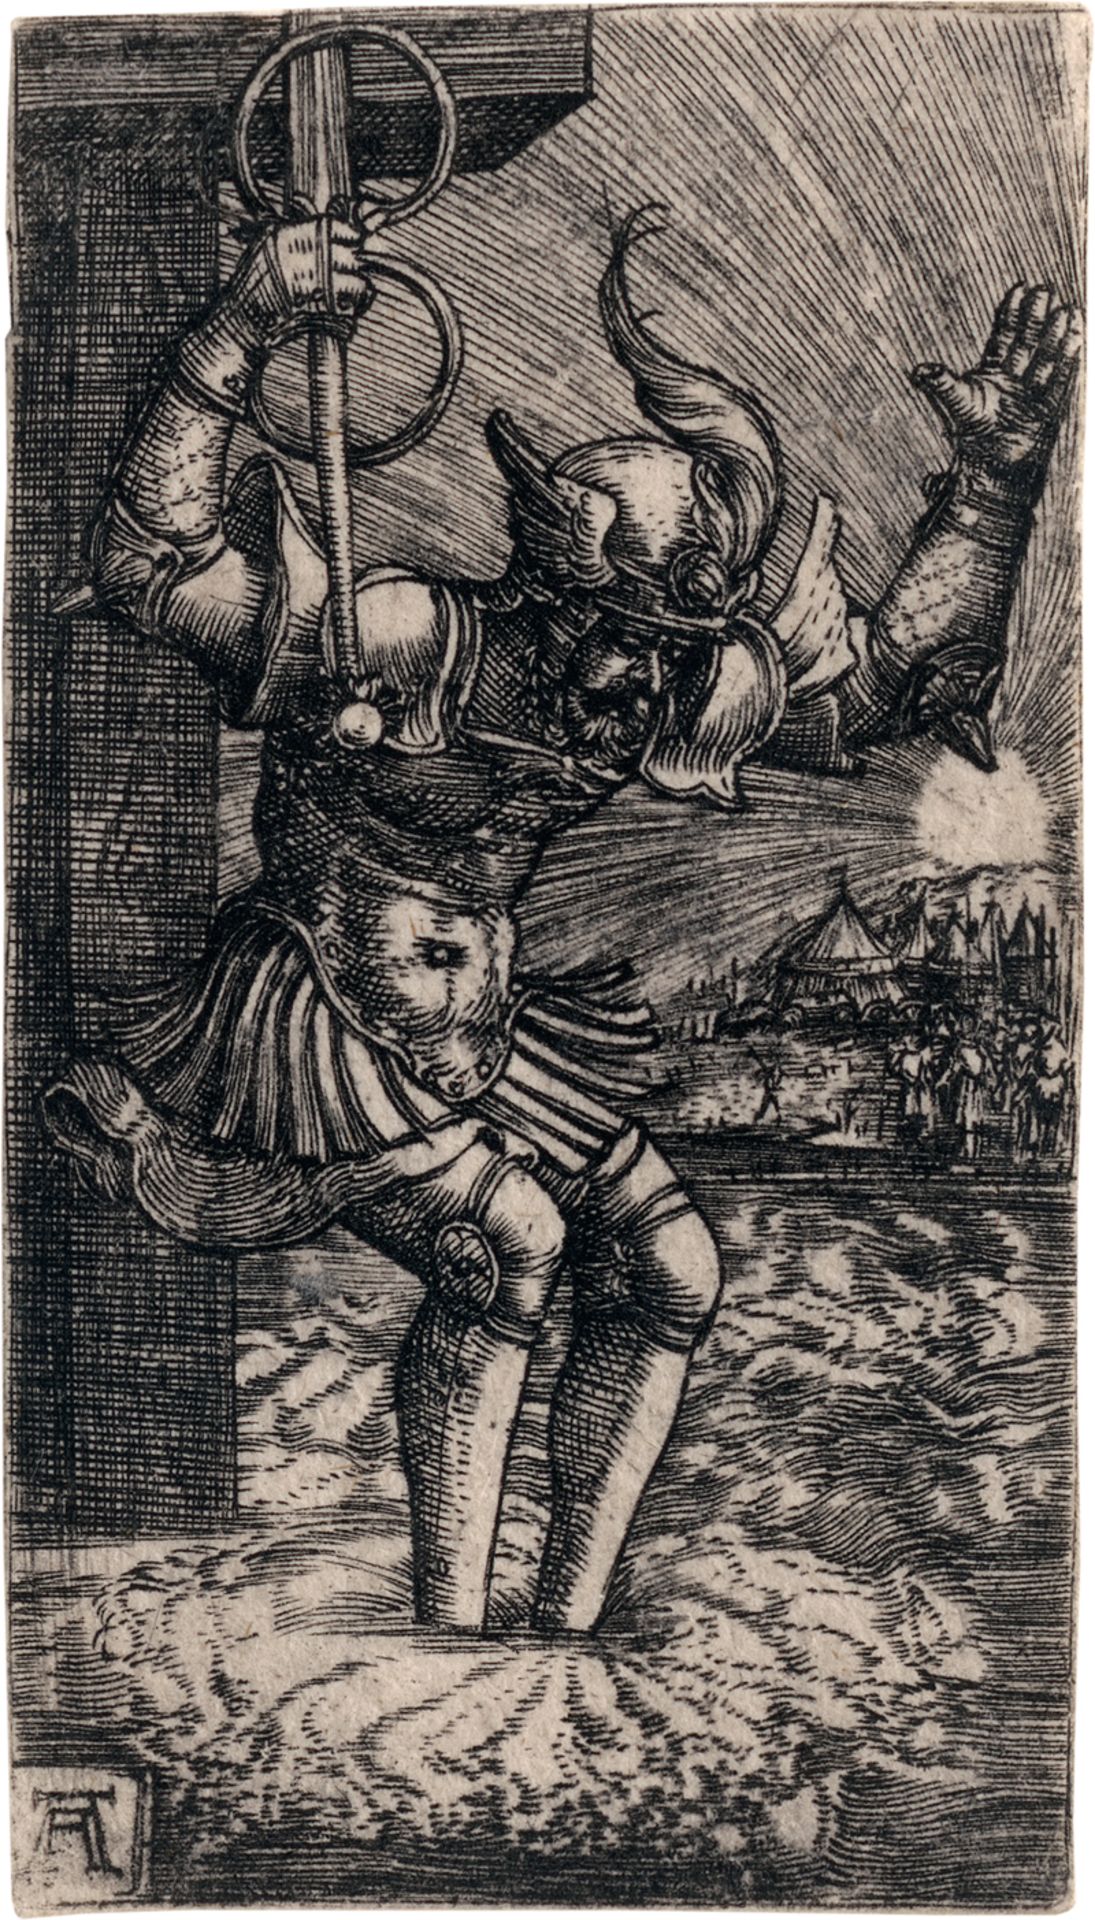 Altdorfer, Albrecht: Horatius Cocles springt in den Tiber